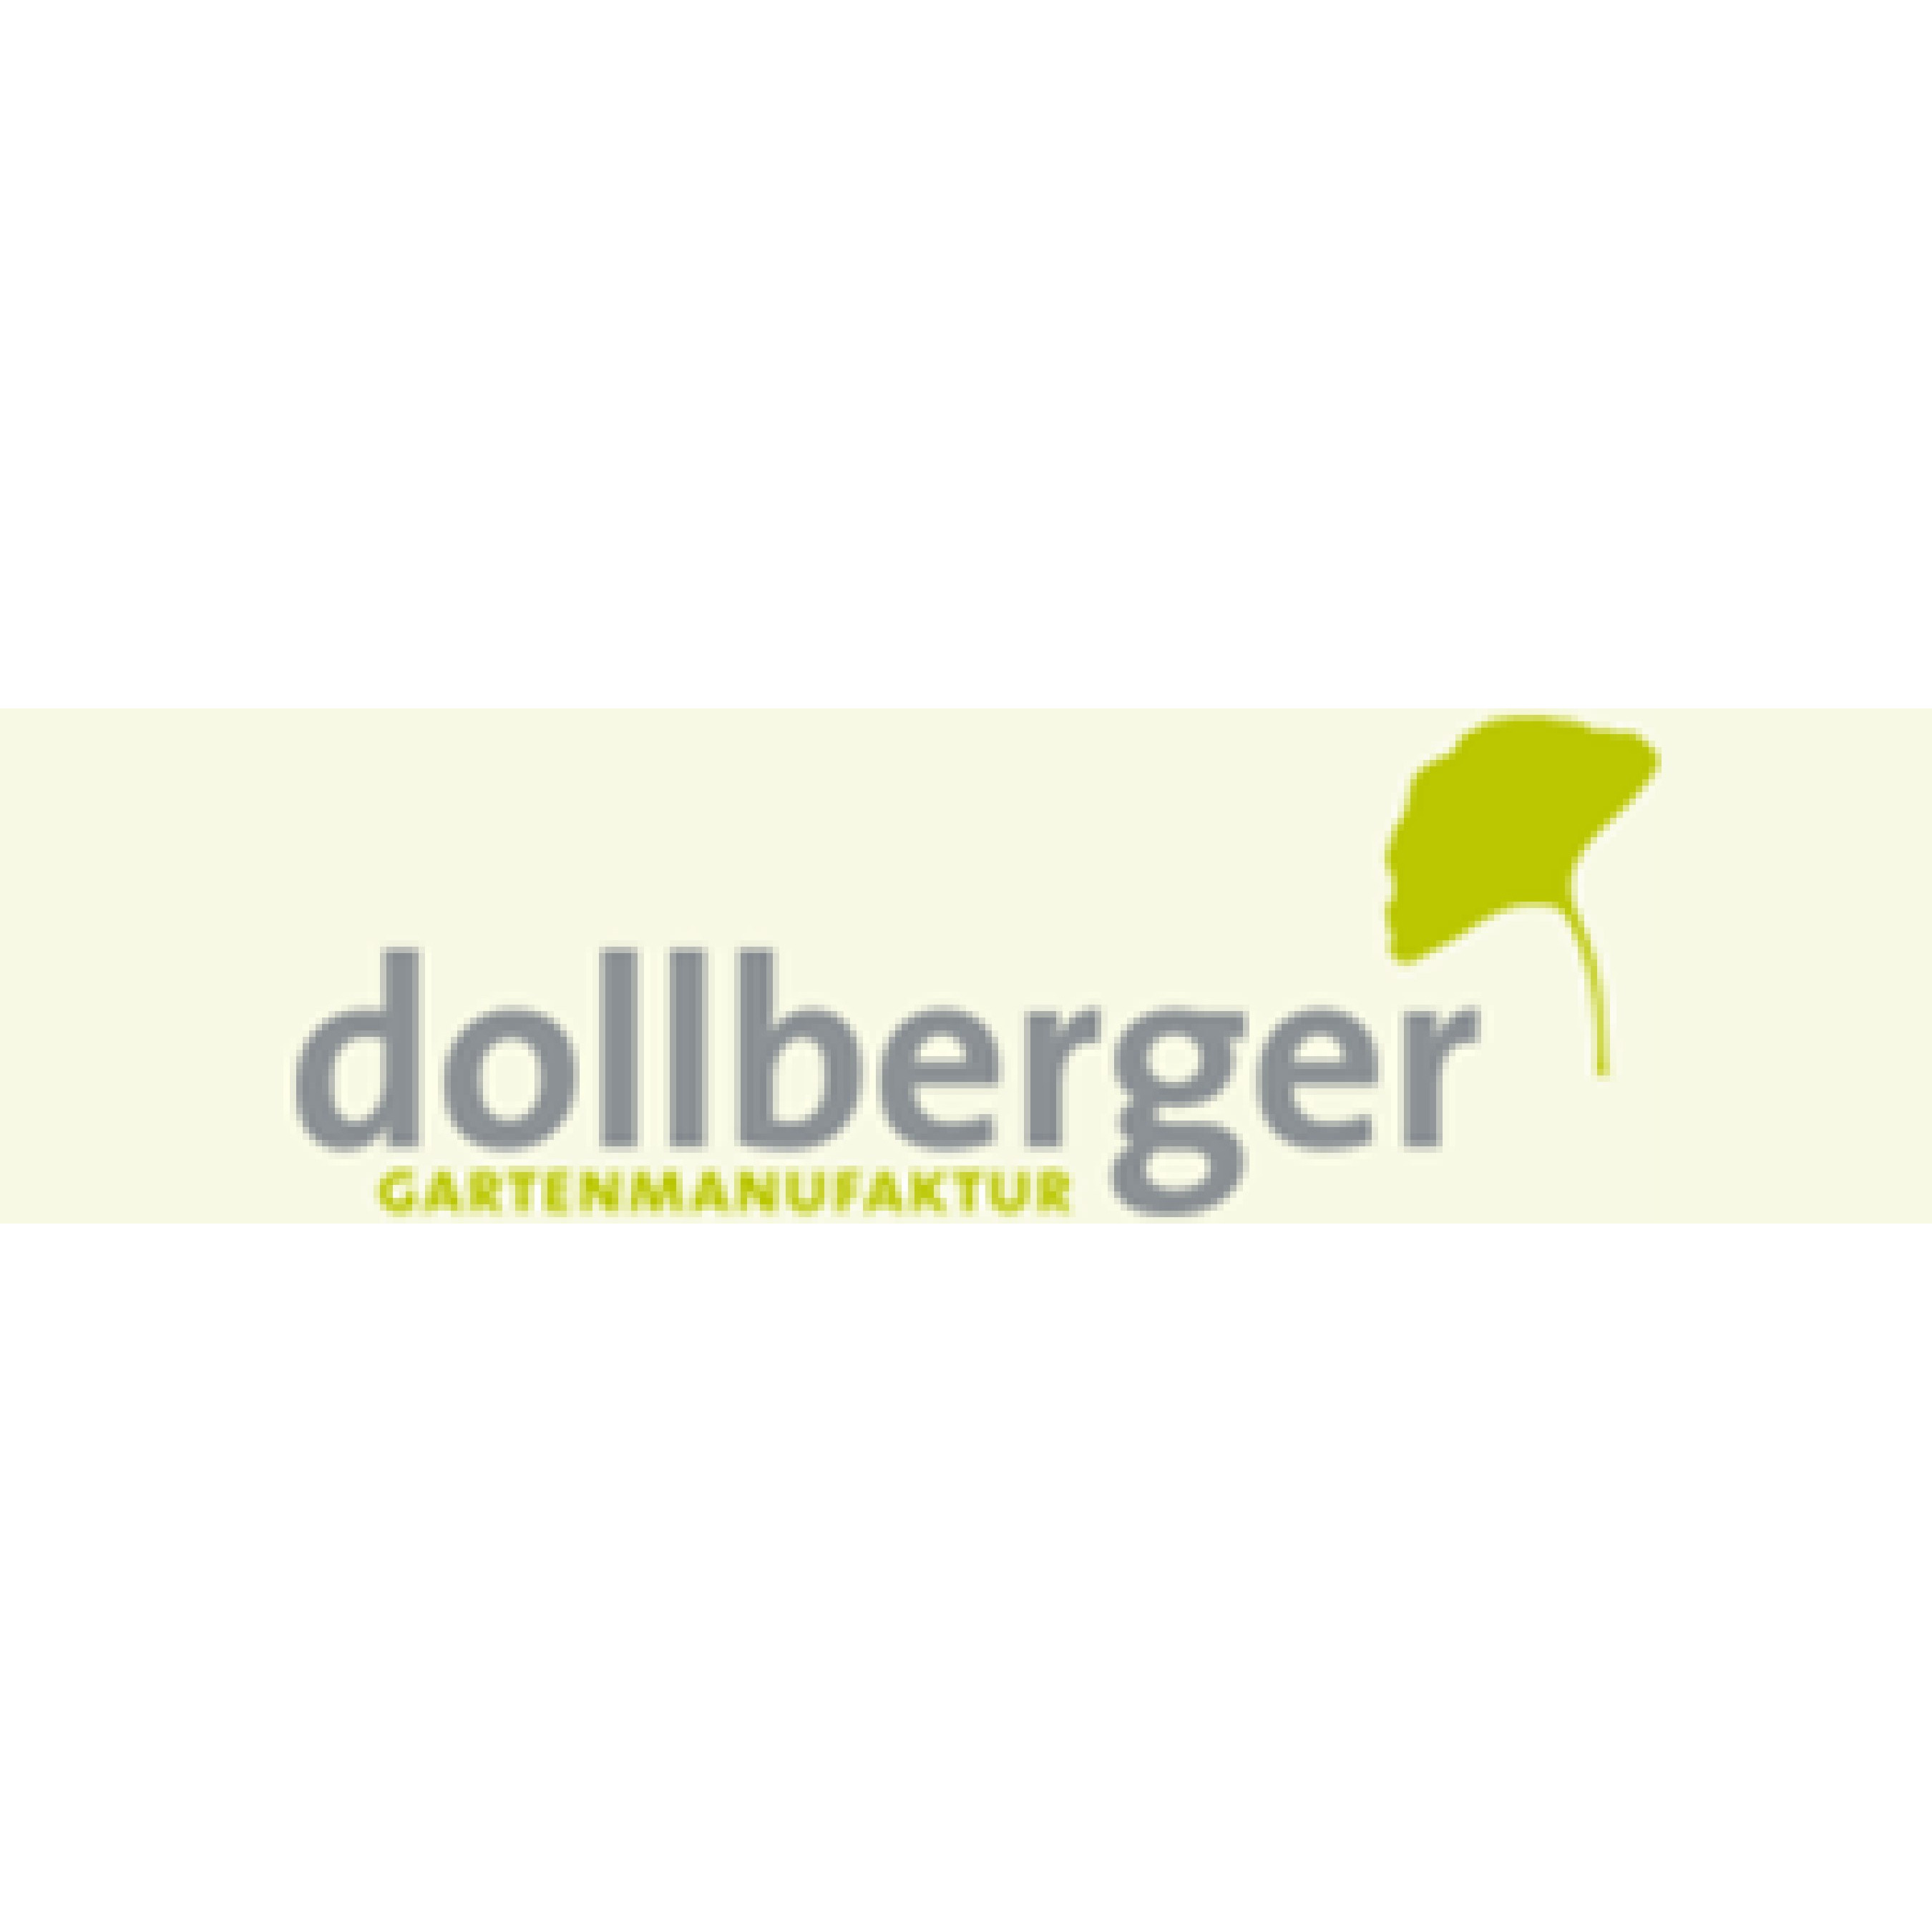 Dollberger Gartenmanufaktur